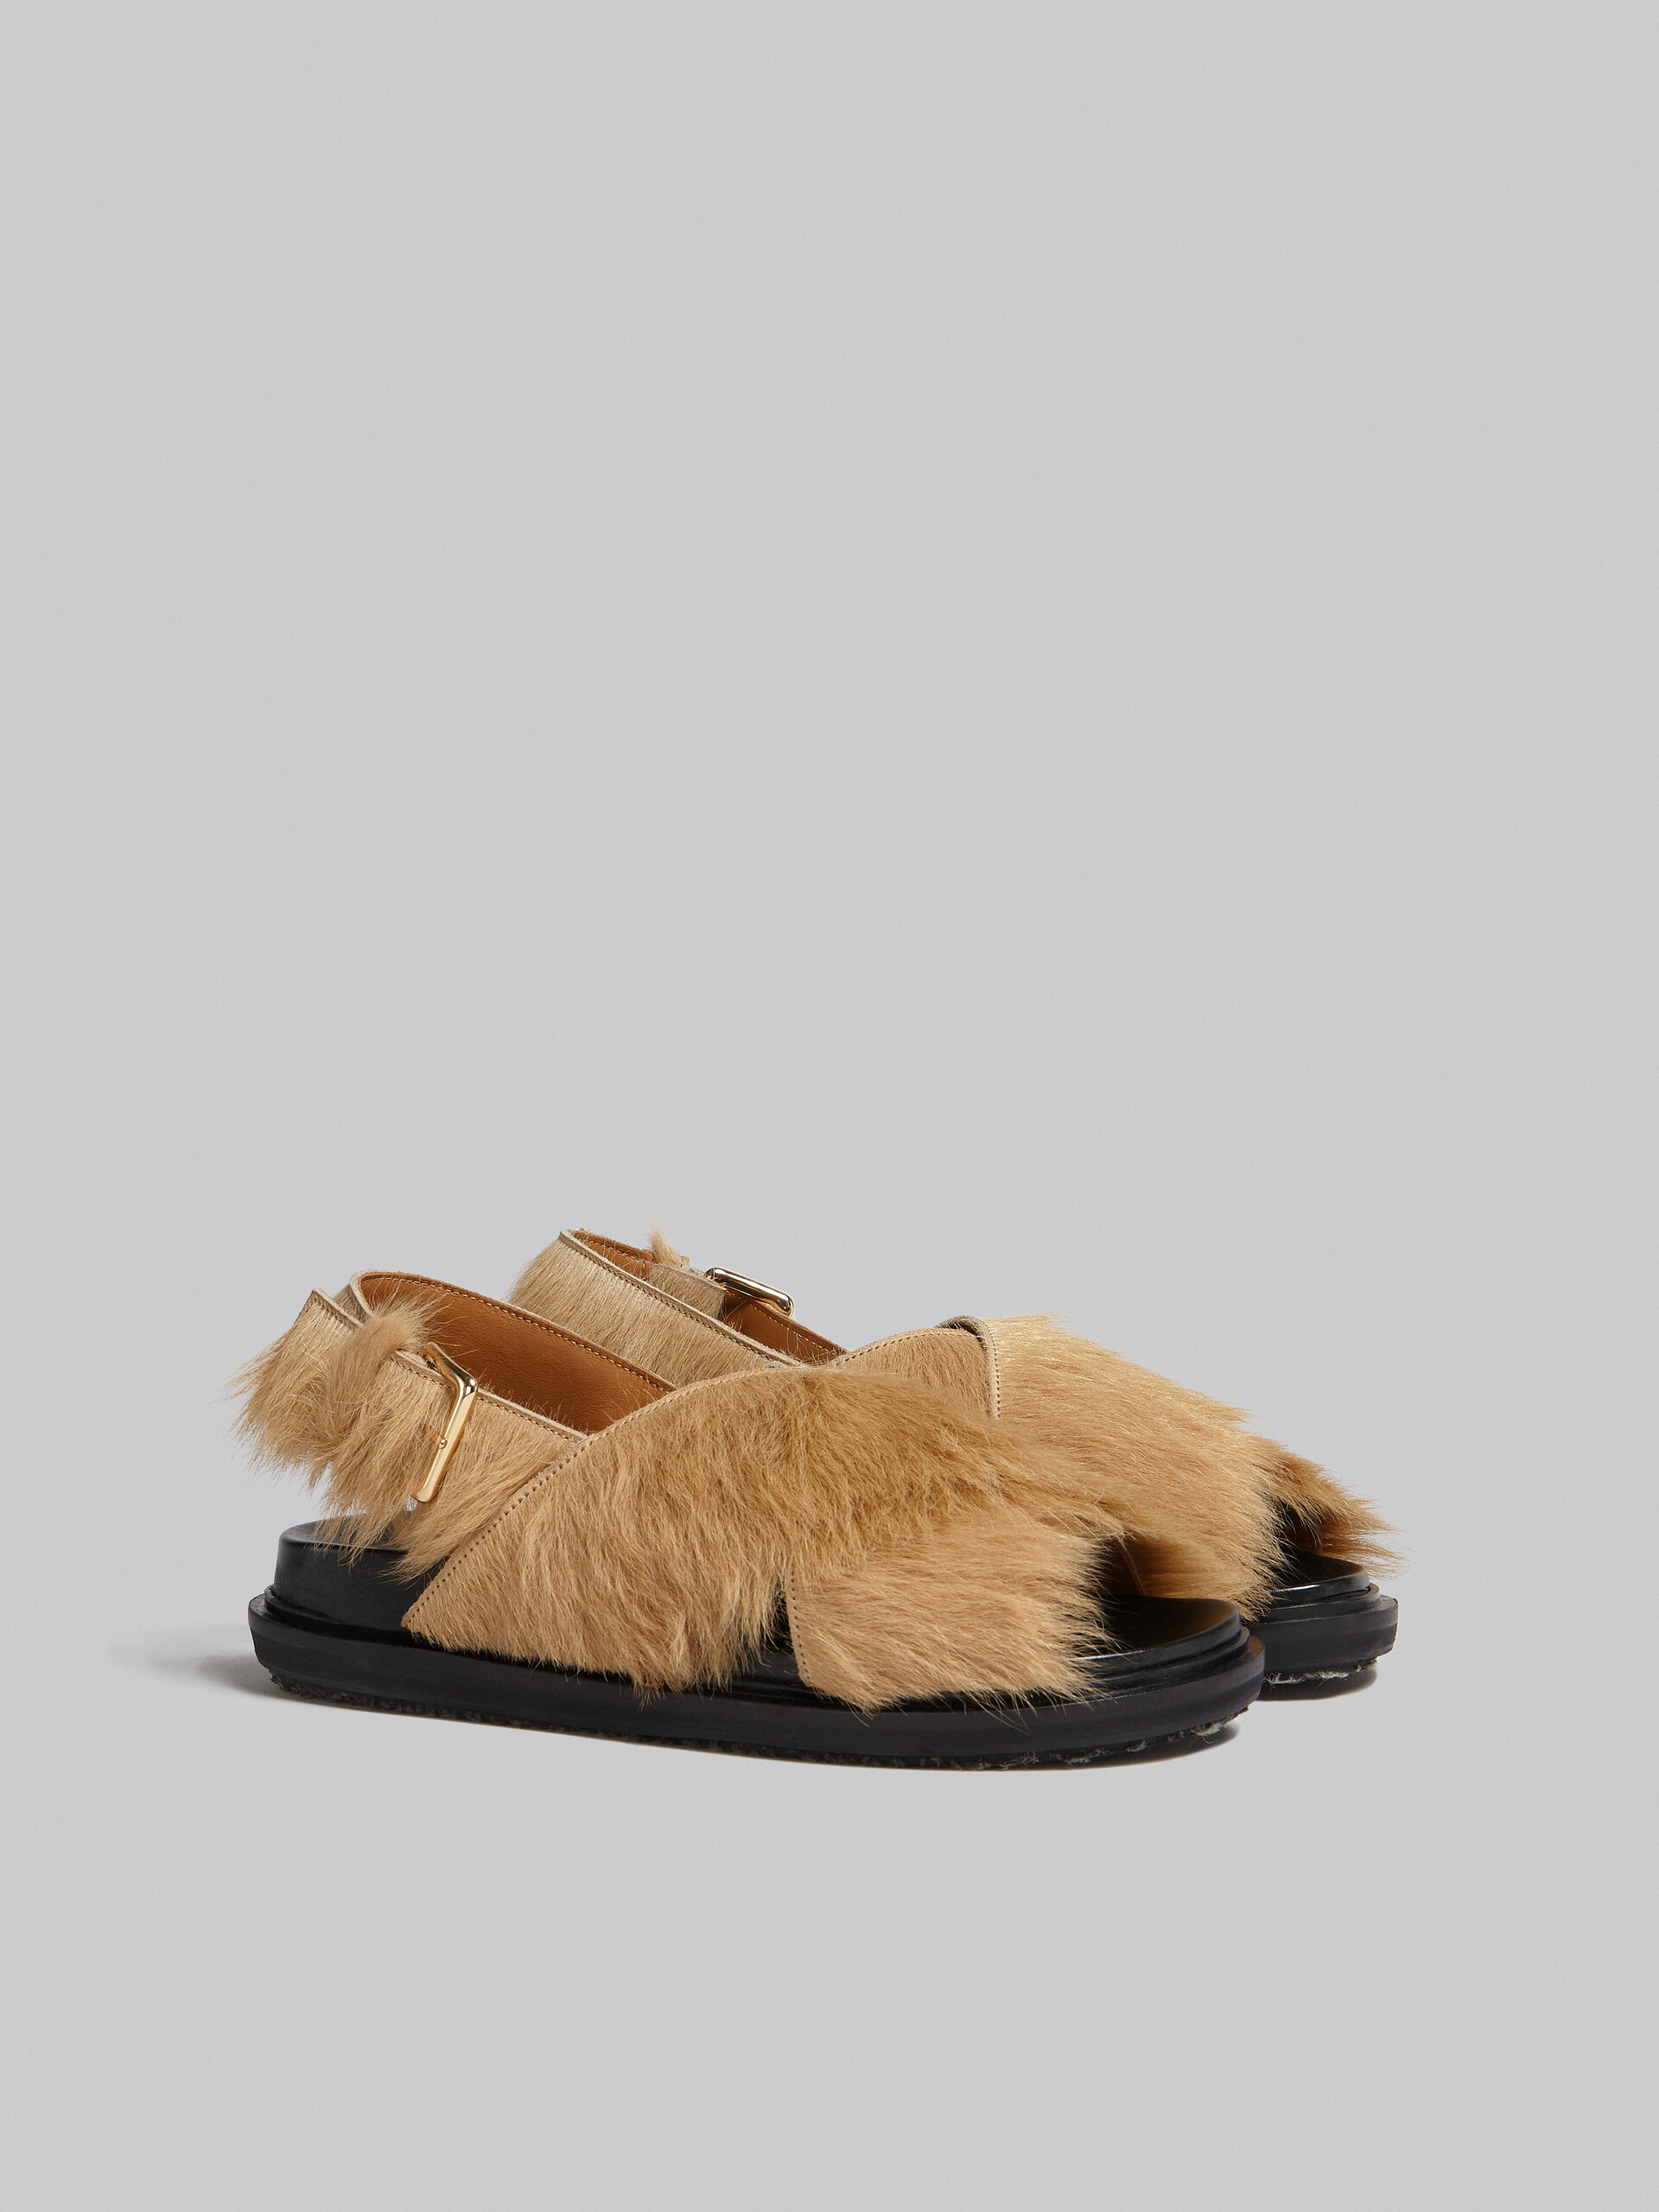 Beige long-hair calfskin Fussbett - Sandals - Image 2